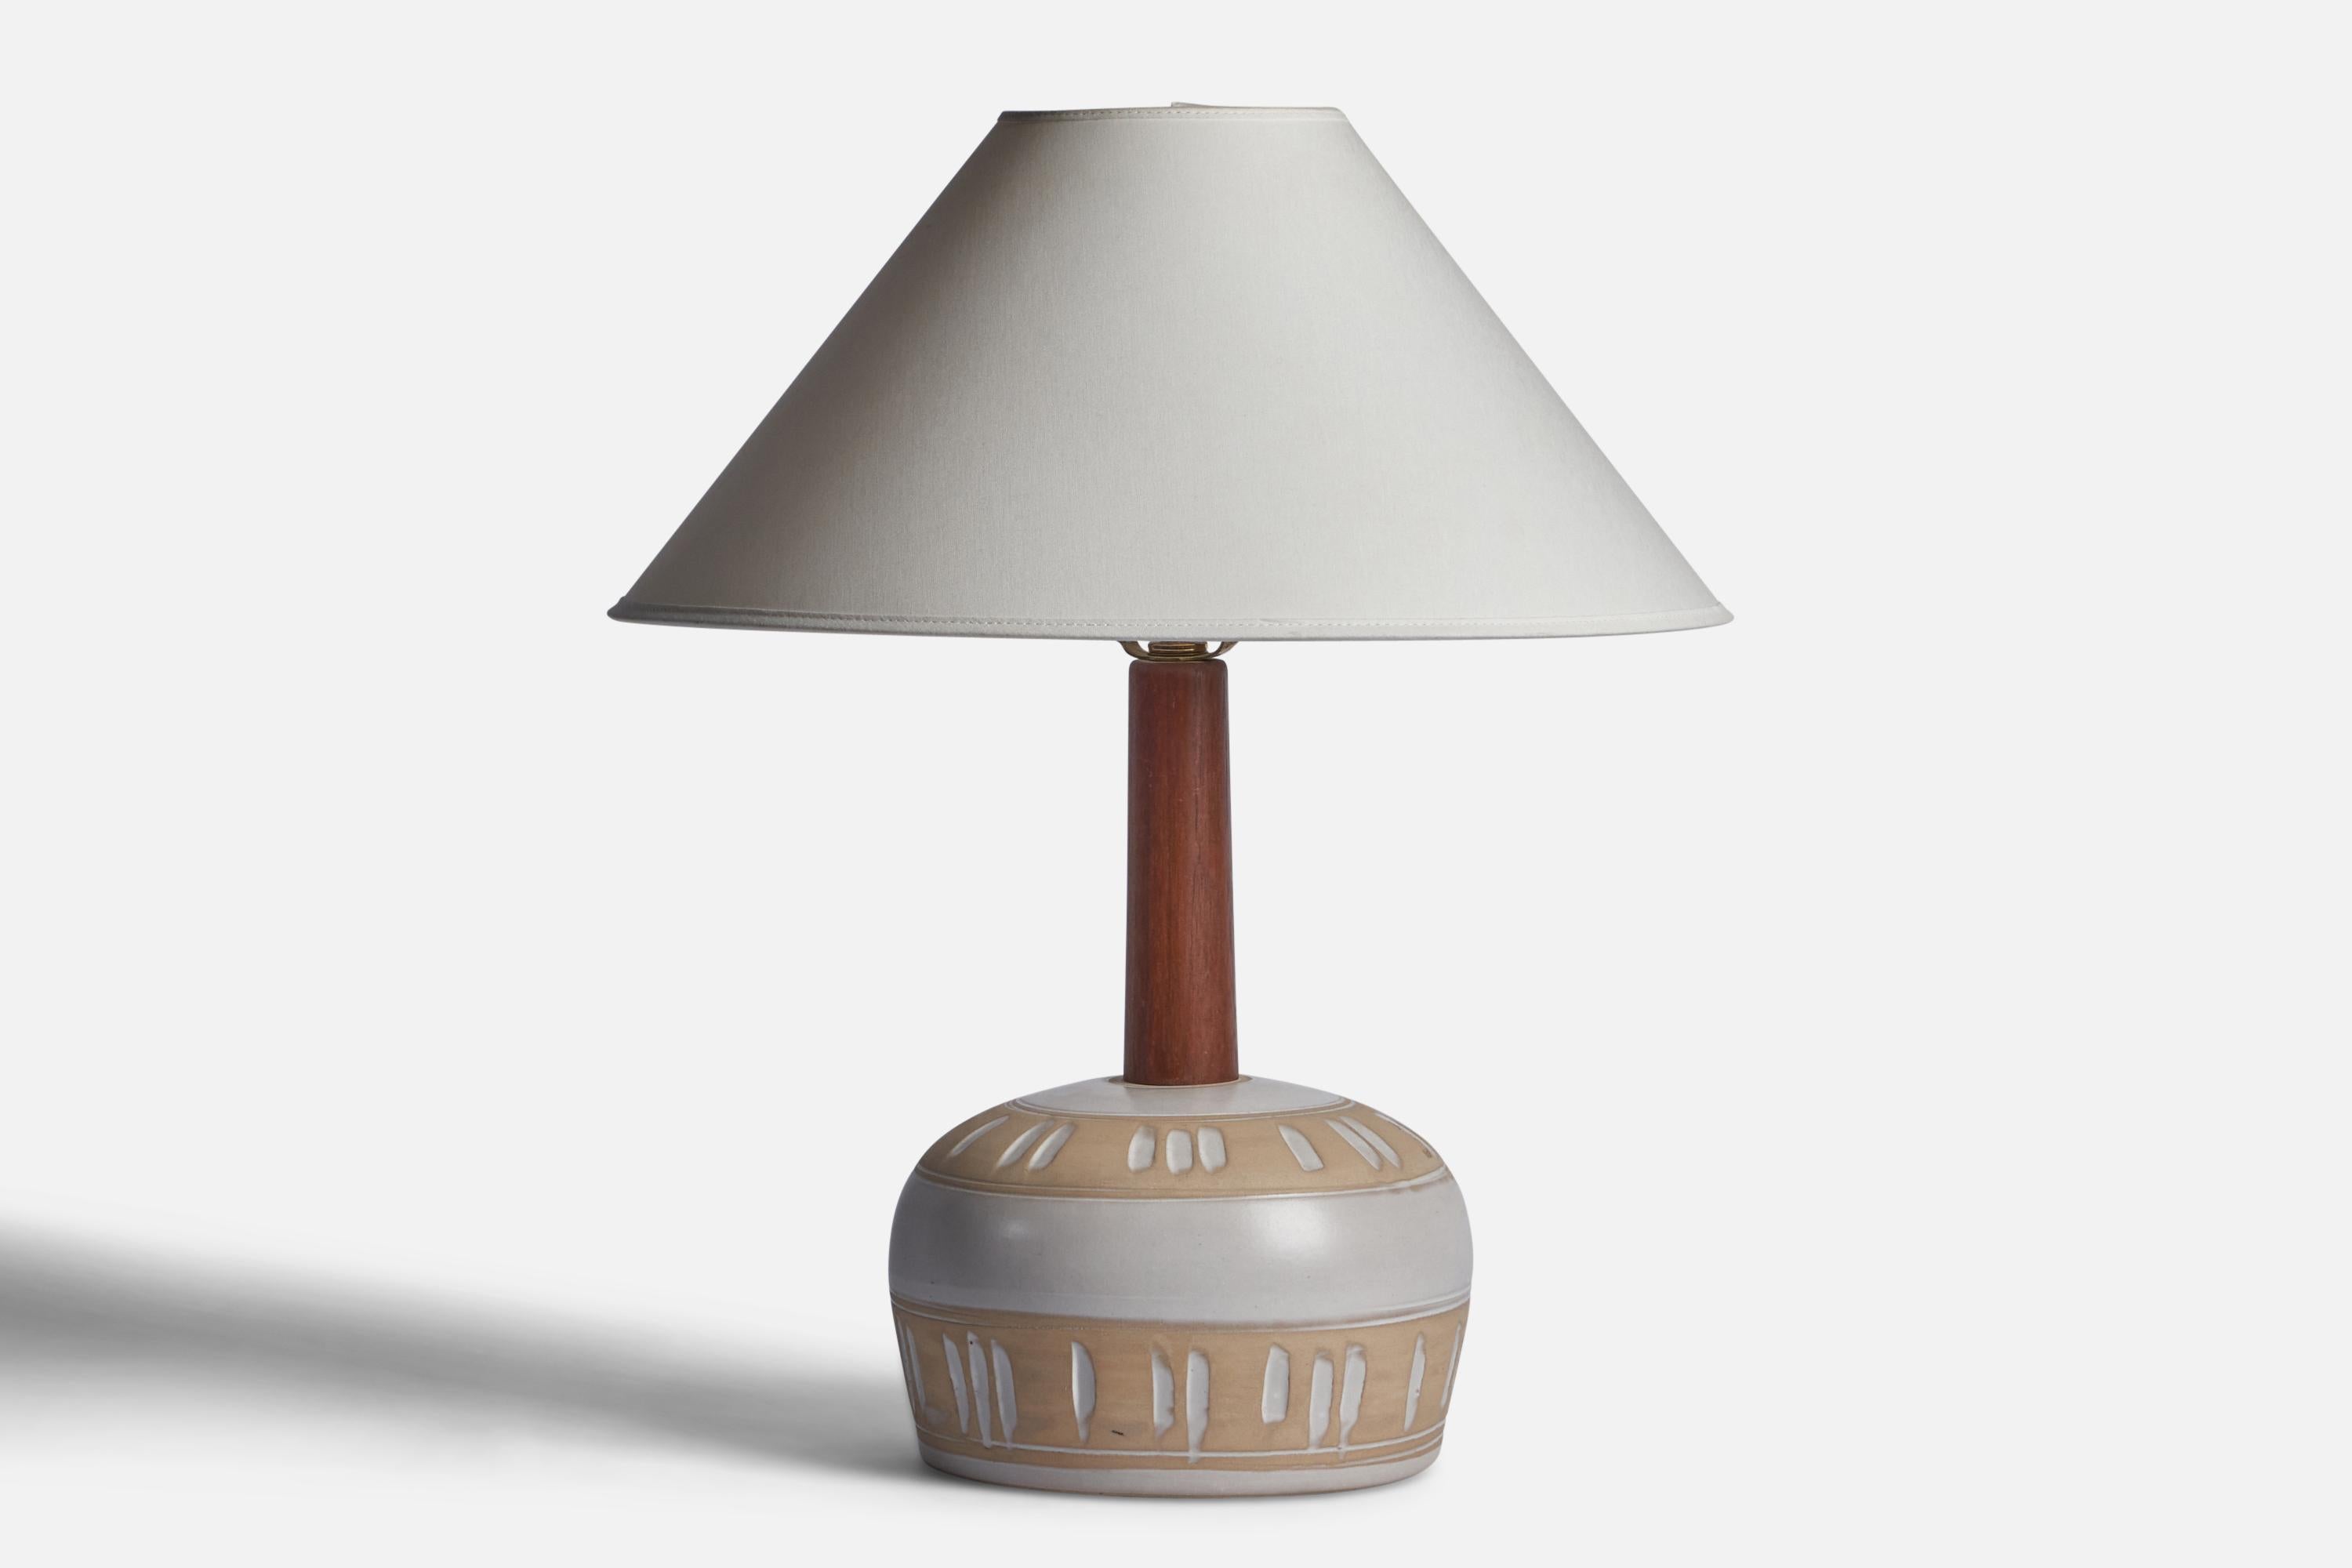 Lampe de table en céramique beige et blanche et en noyer, conçue par Jane & Gordon Martz et produite par Marshall Studios, États-Unis, années 1960.

Dimensions de la lampe (pouces) : 14.5